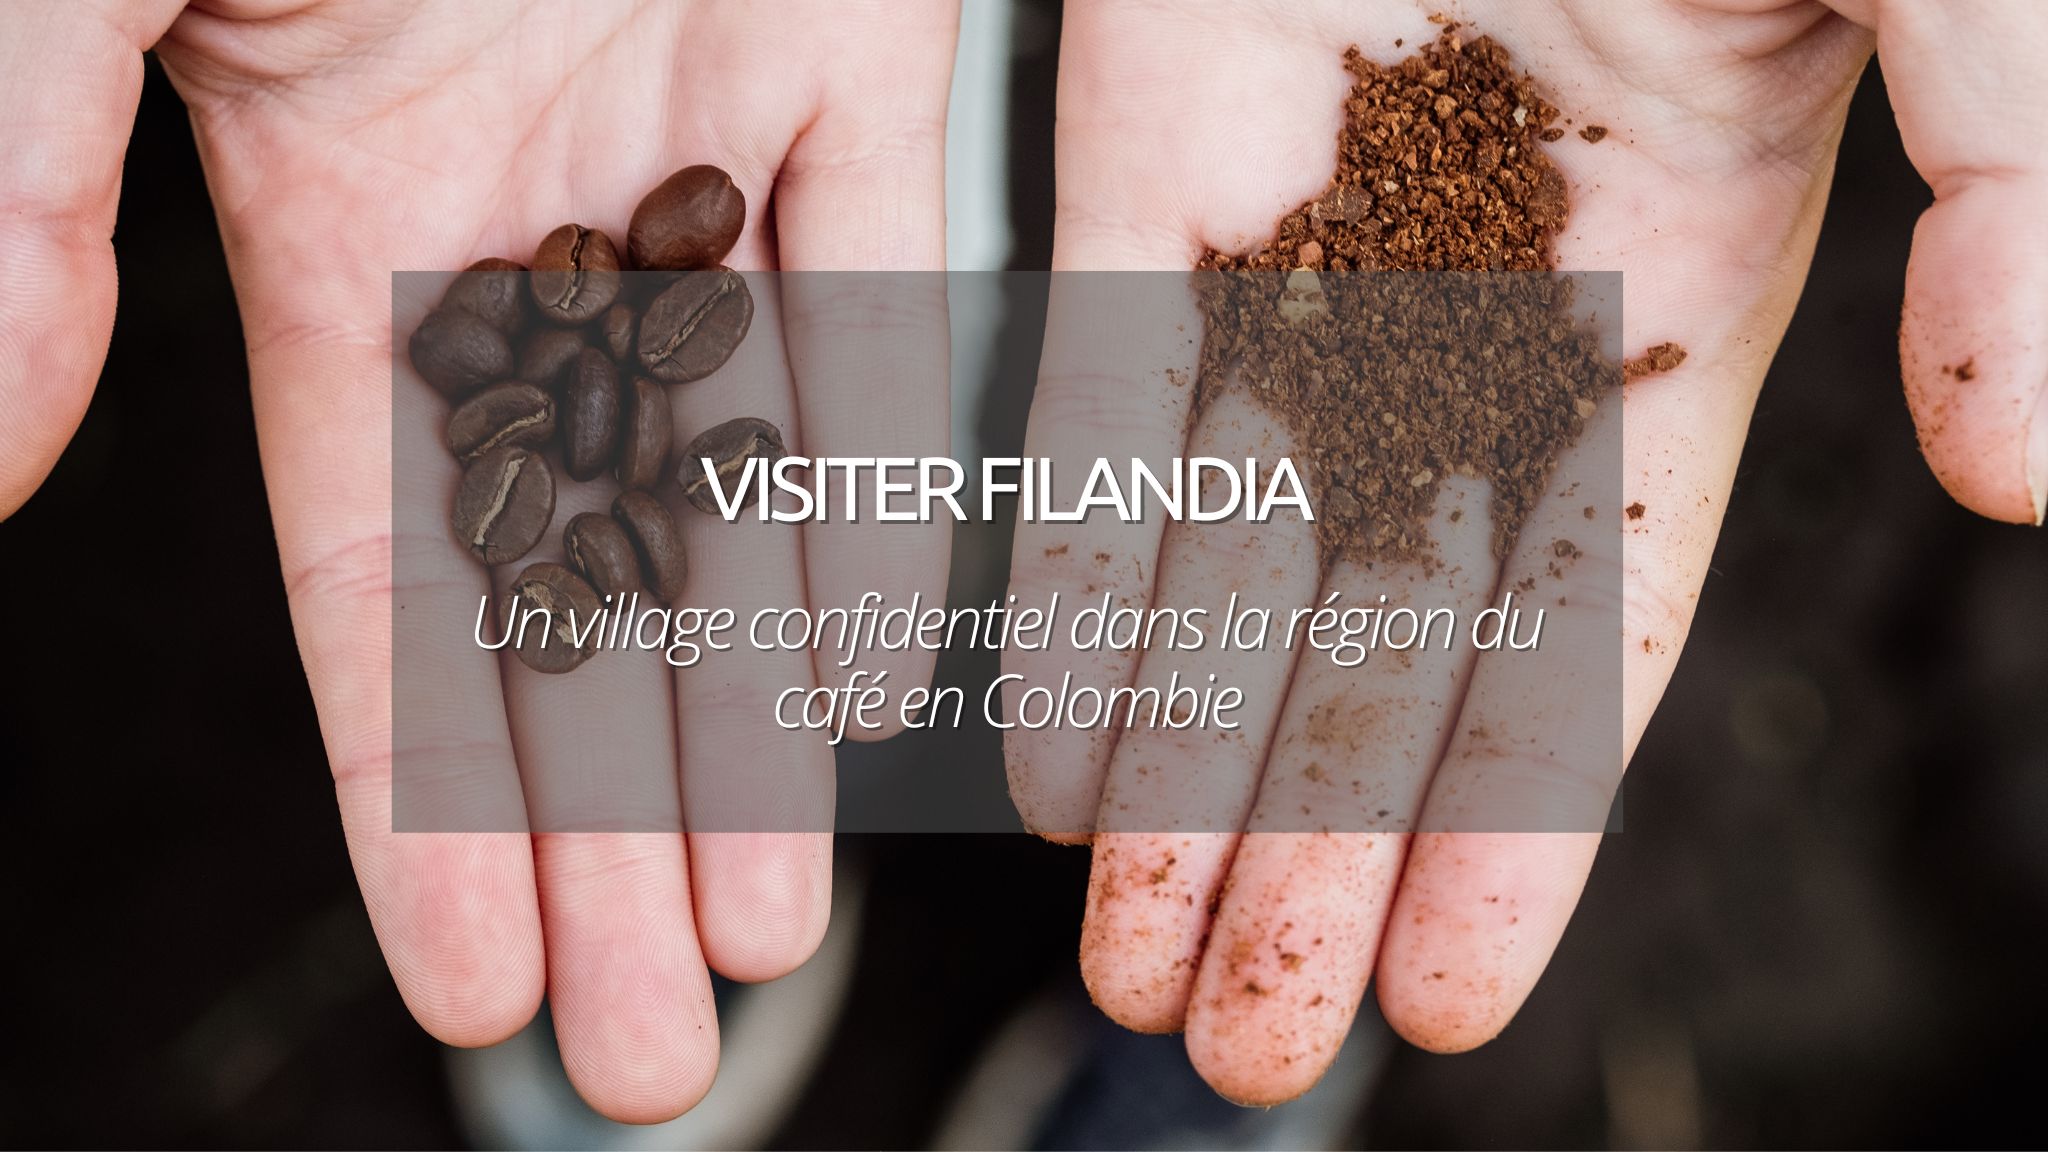 Visiter Filandia, village confidentiel dans la région du café en Colombie !